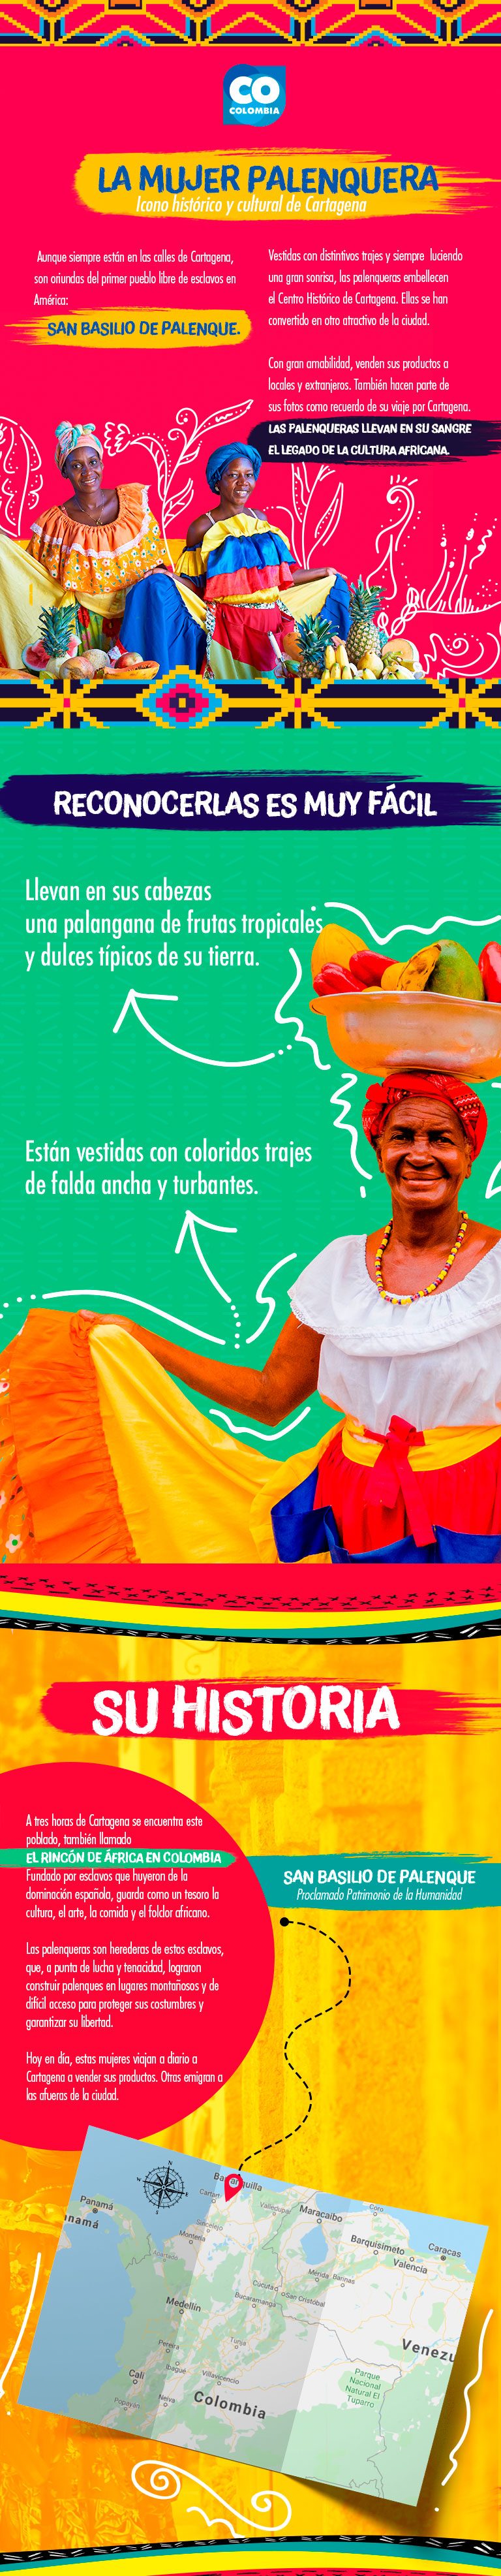 Mujer palenquera icono histórico y cultural de Cartagena de Indias - calles de Cartagena- Palenqueras en cartagena